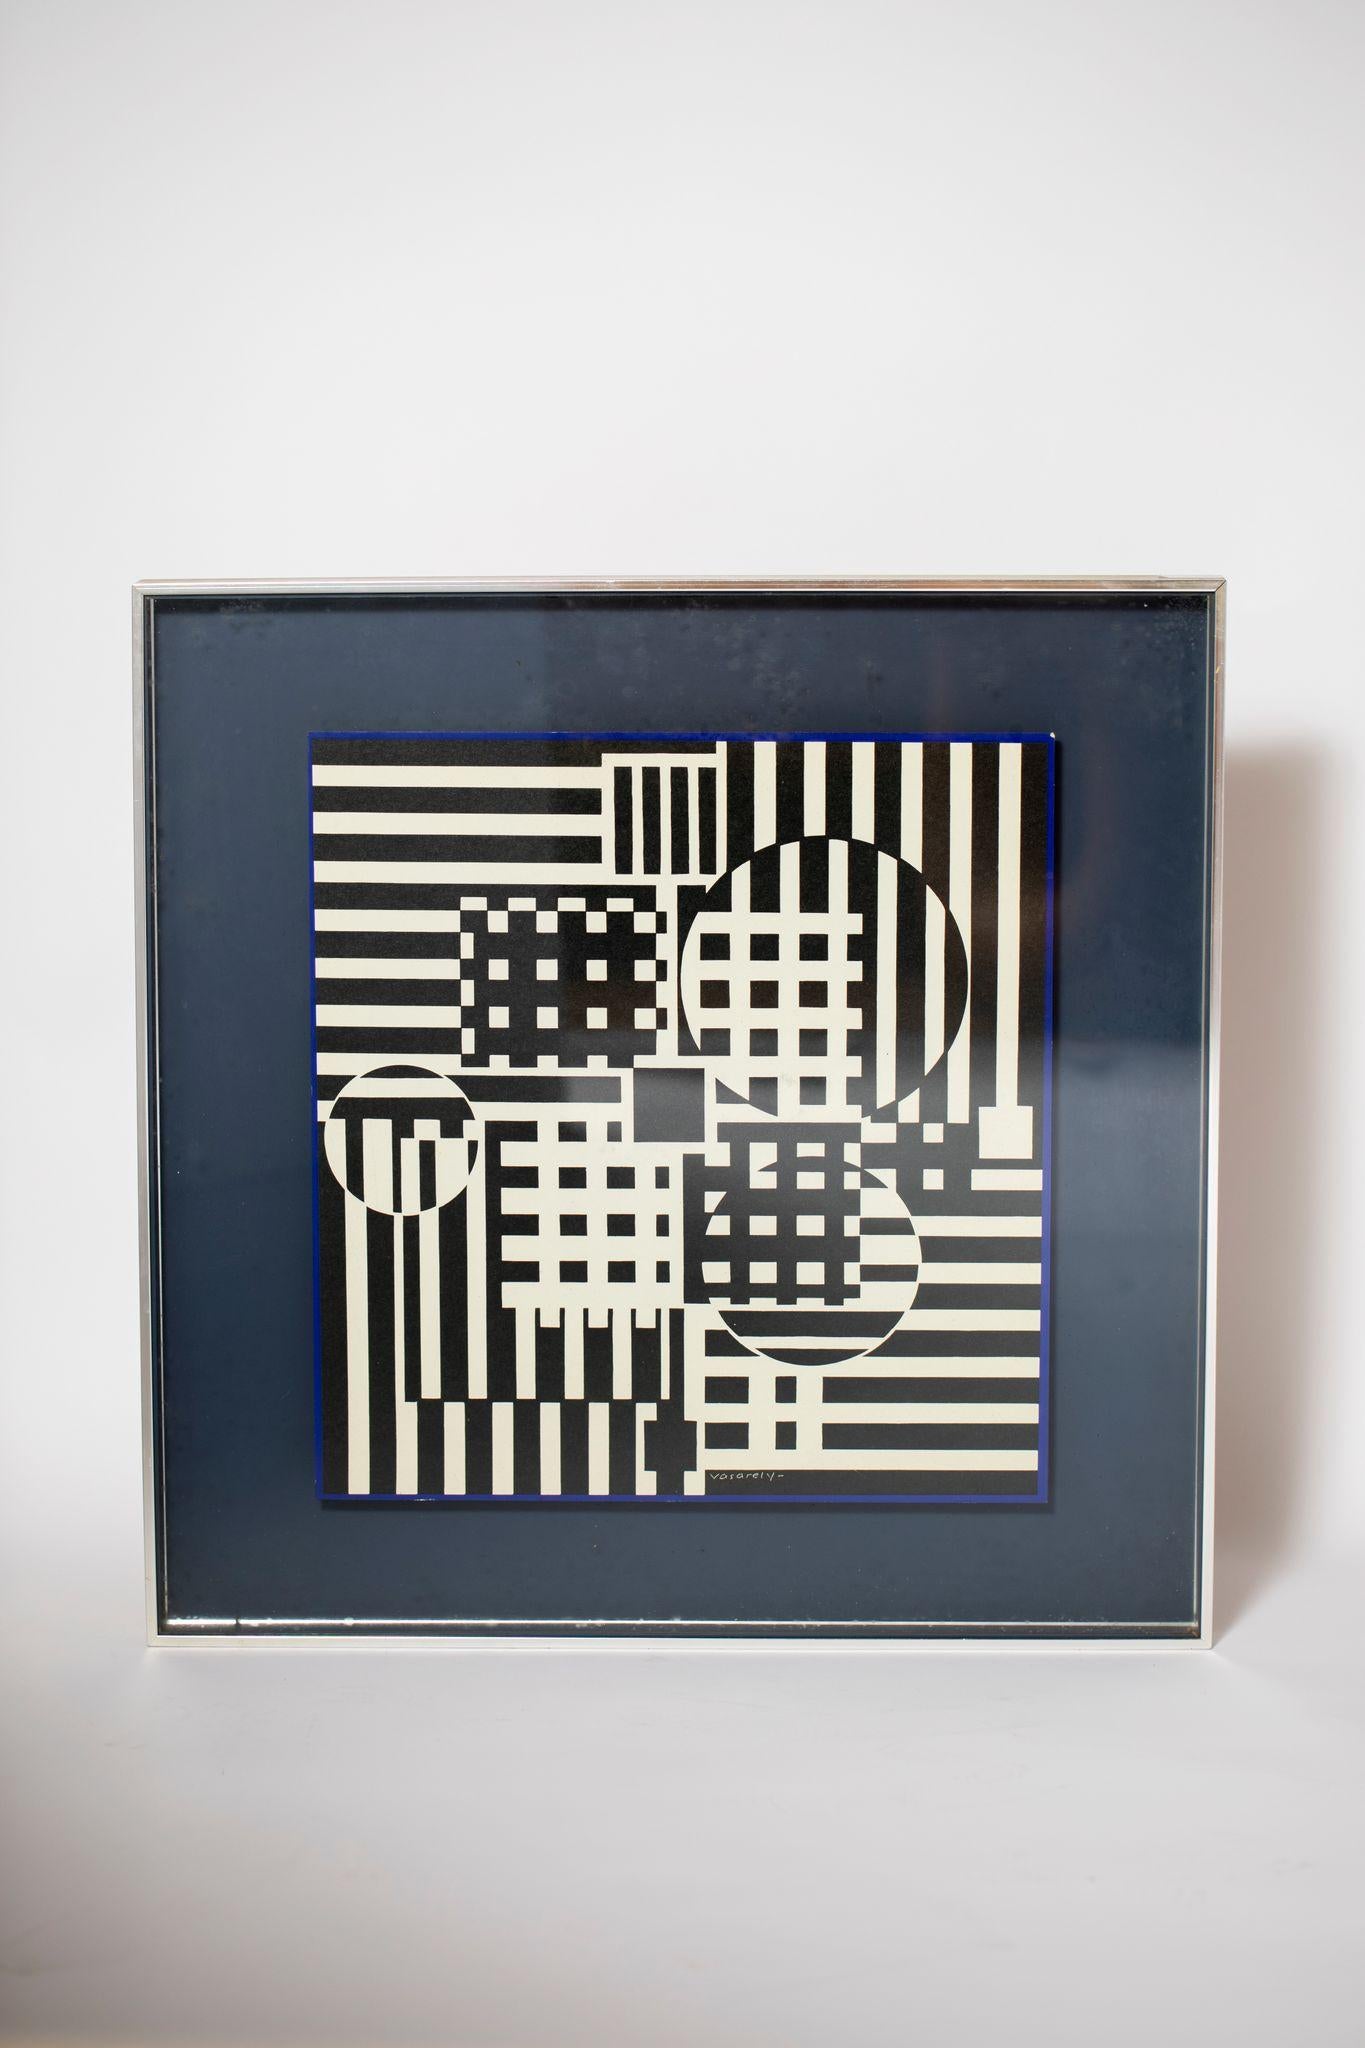 Boîte encadrée d'une estampe géométrique de Victor Vasarely, signée.

Cadre original en acier inoxydable brossé.